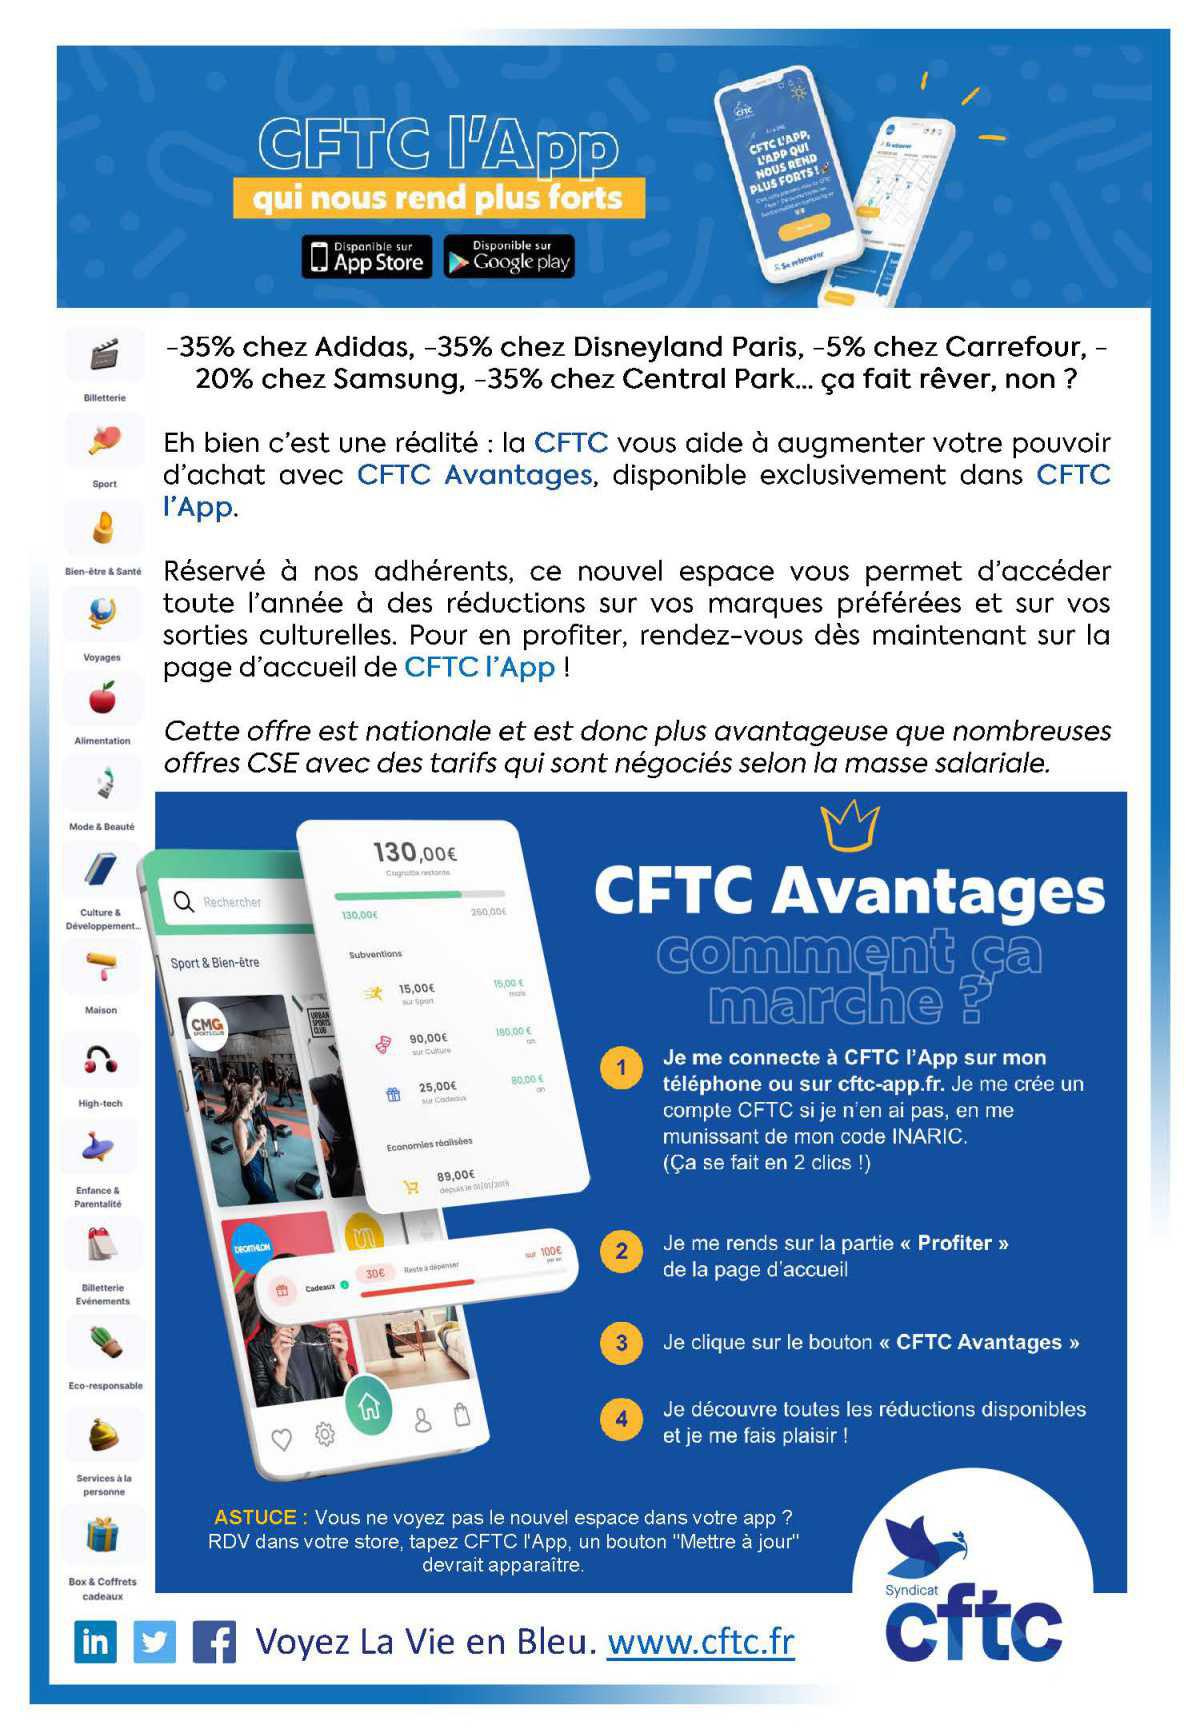 Les nombreux avantages disponibles grâce à la CFTC